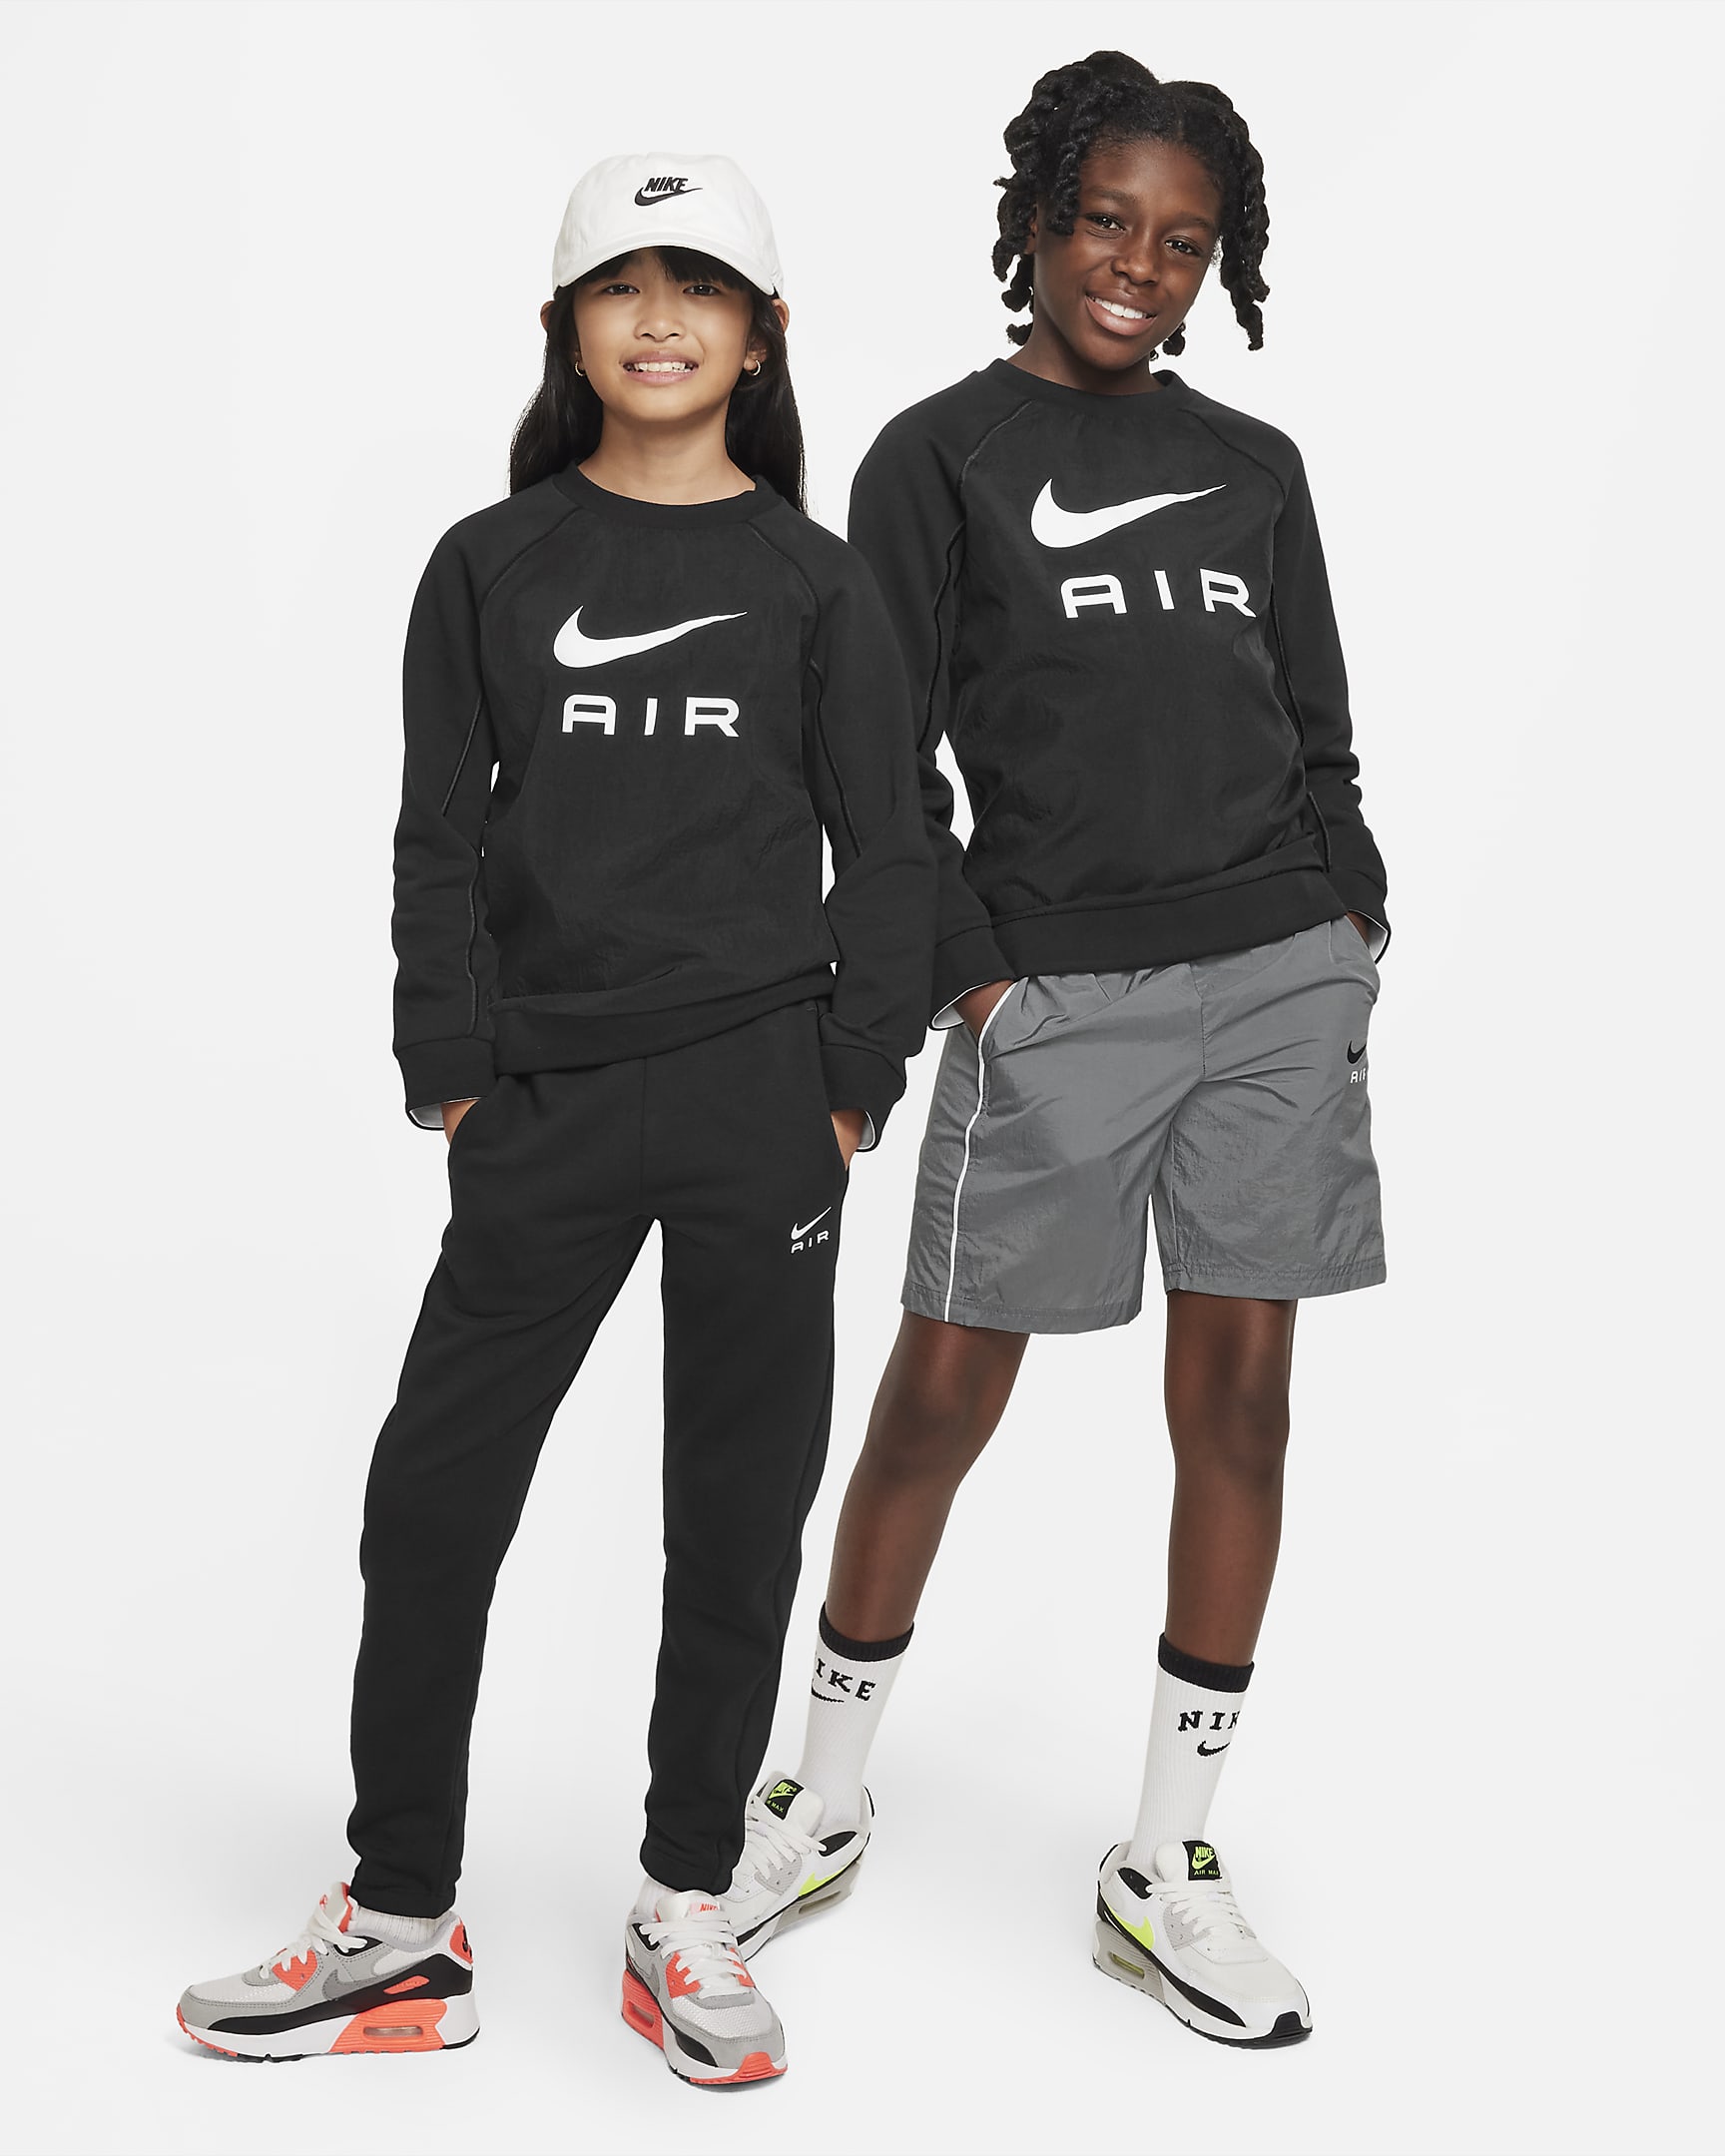 Nike Air Older Kids' Sweatshirt. Nike NZ